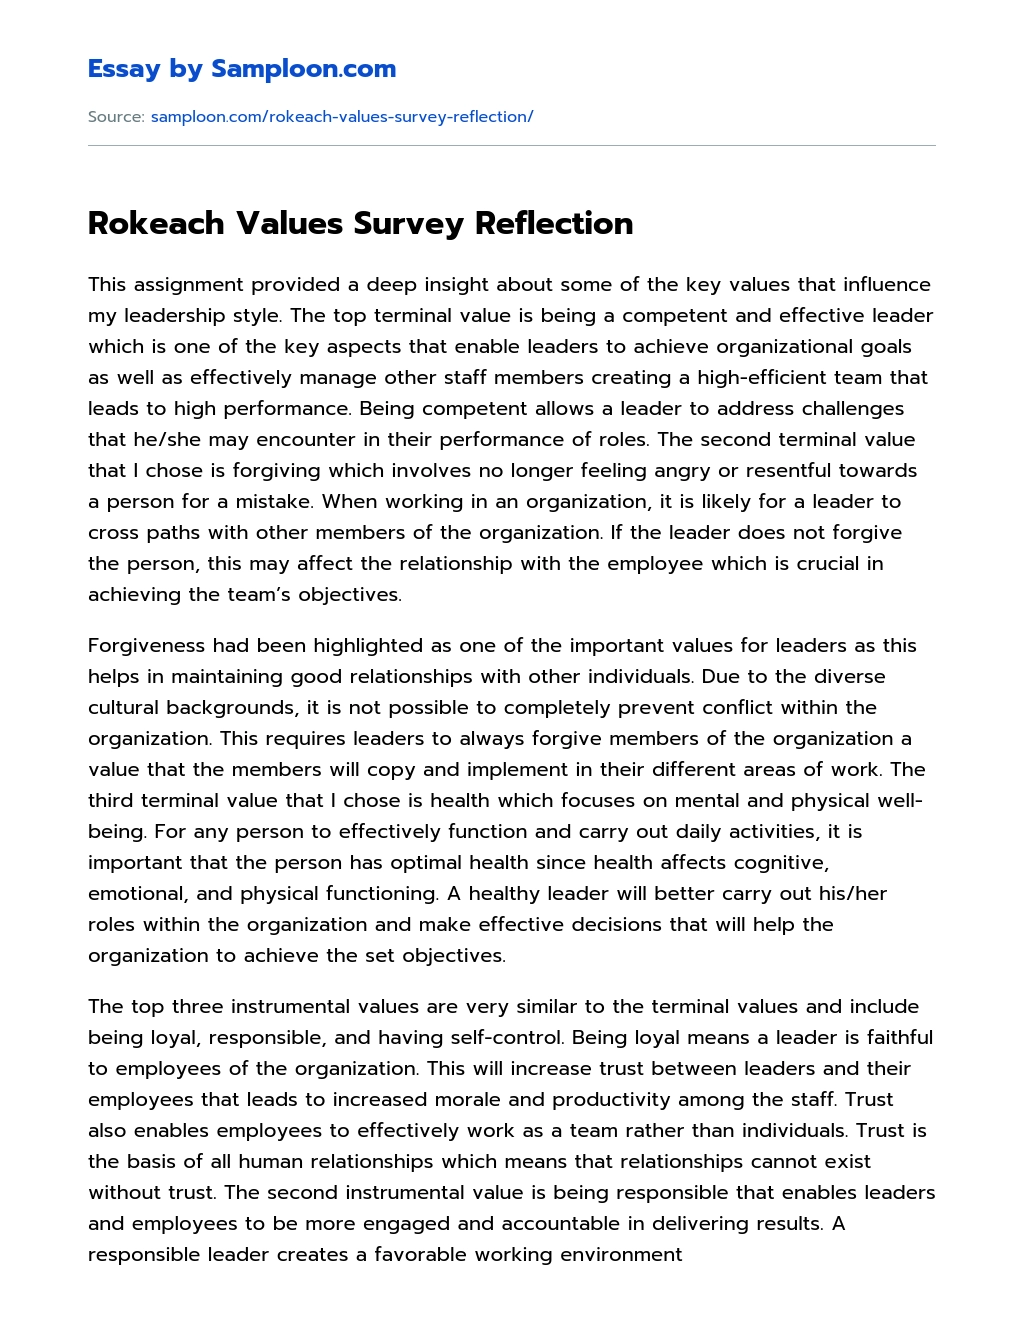 Rokeach Values Survey Reflection  essay